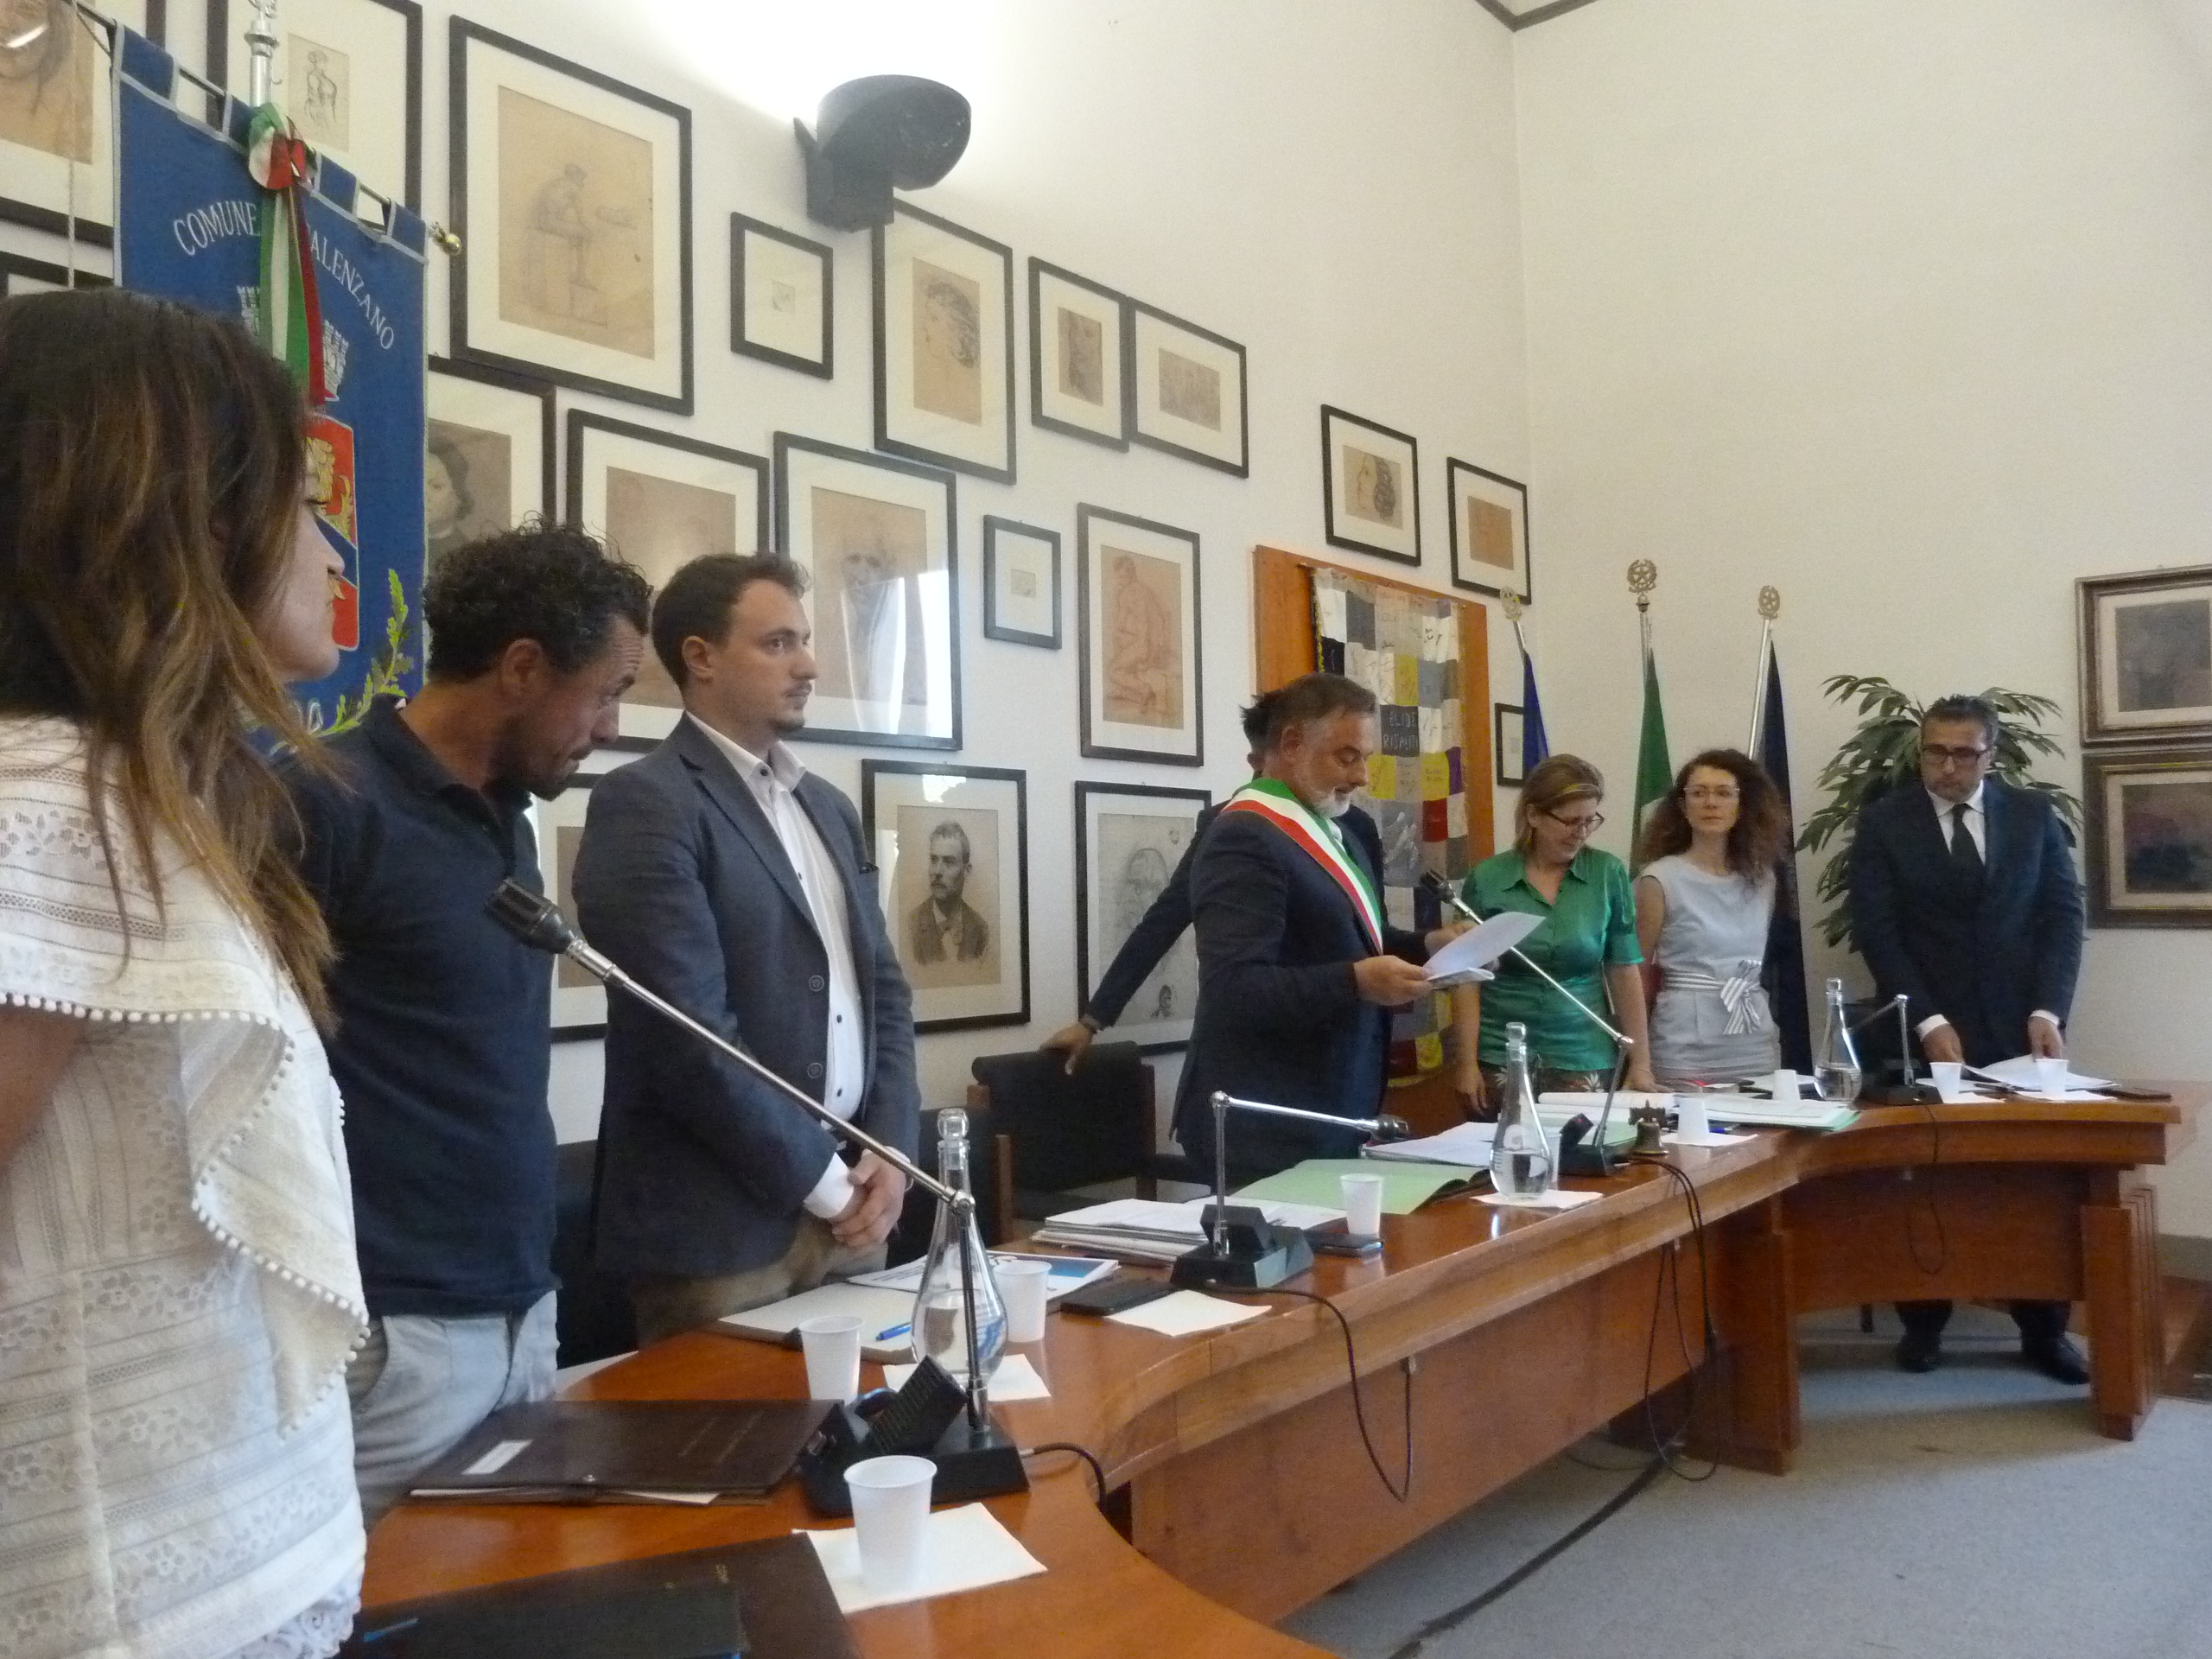 Calenzano - seduta consiglio comunale